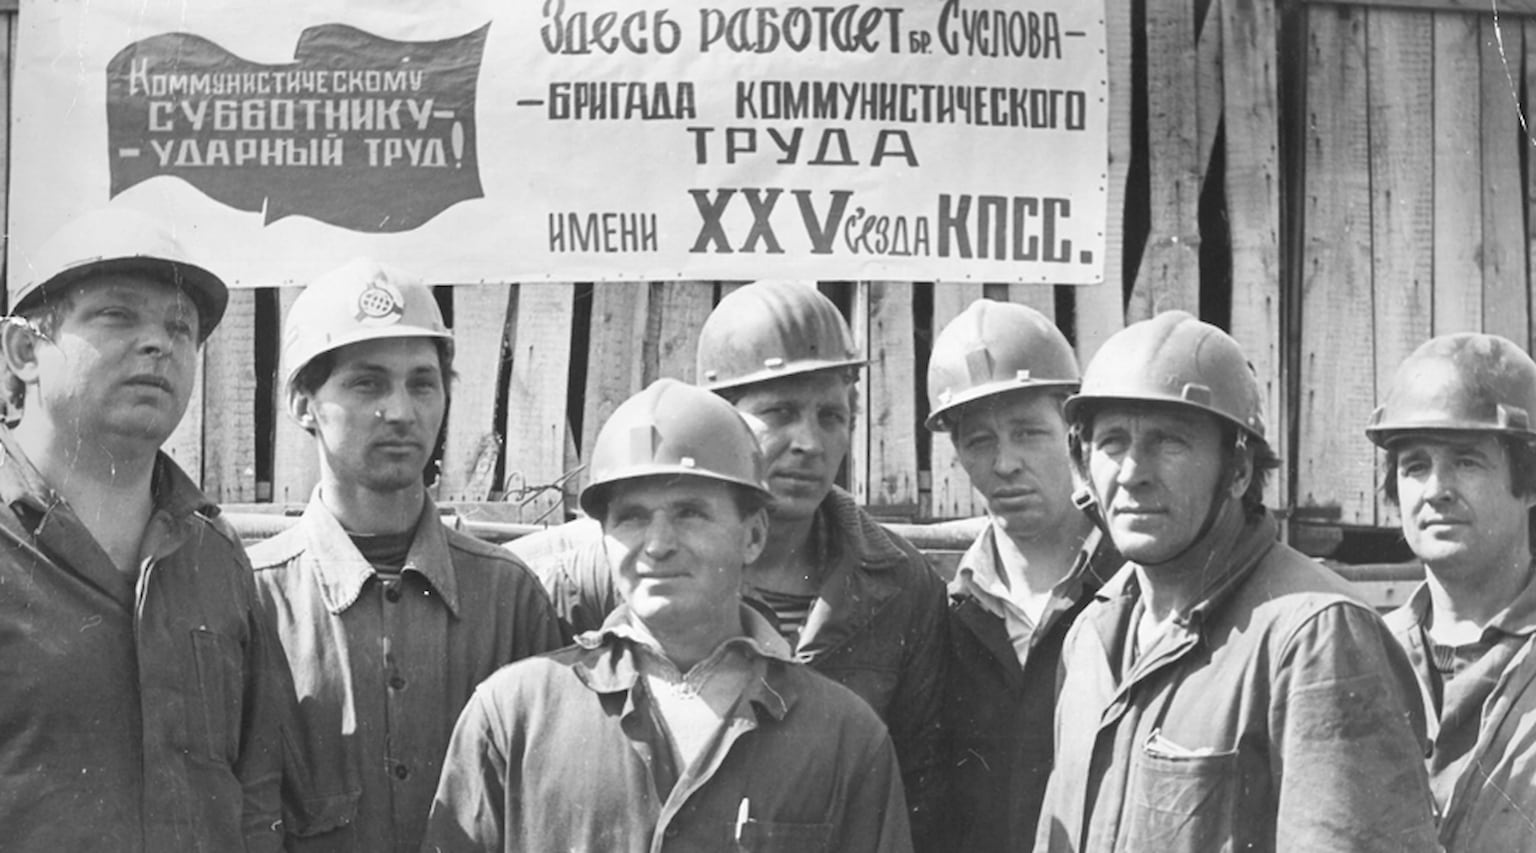 1972. Укрупненная бригада докеров-механизаторов выполнила задание 10-й пятилетки